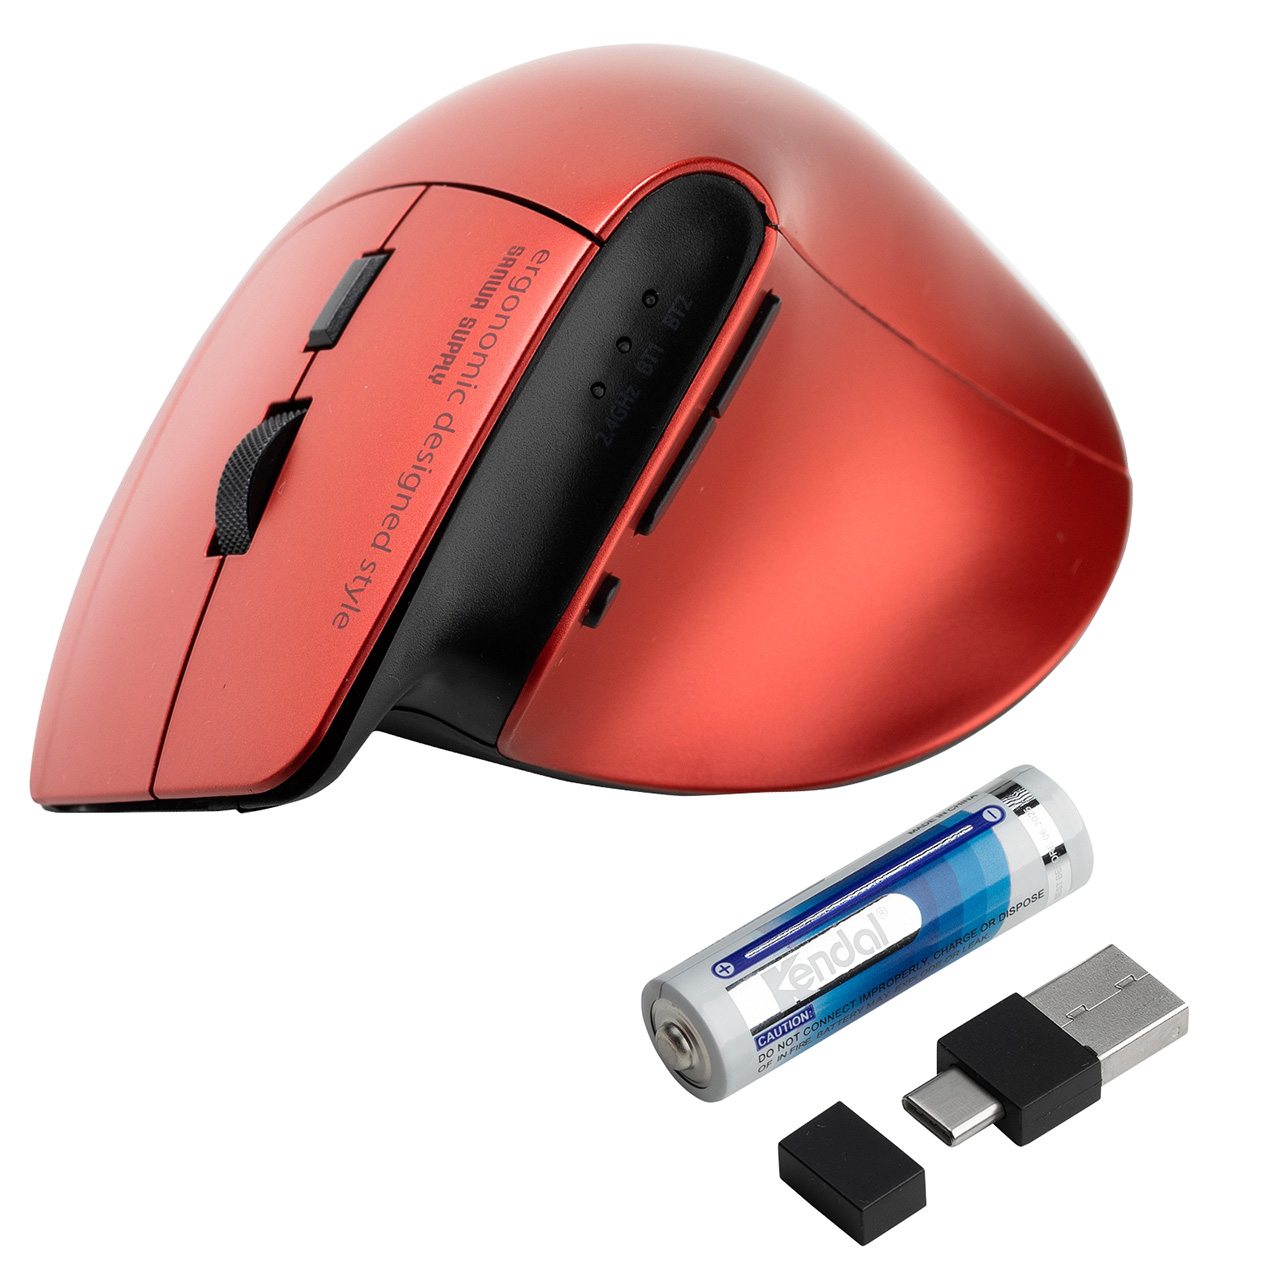 ワイヤレスマウス Bluetooth 2.4GHz 両対応 マルチペアリング 3台接続 無線 エルゴノミクス USB A Type-C レシーバー 5ボタン 戻る 進む 静音 電池式 レッド 400-MAWBT193R